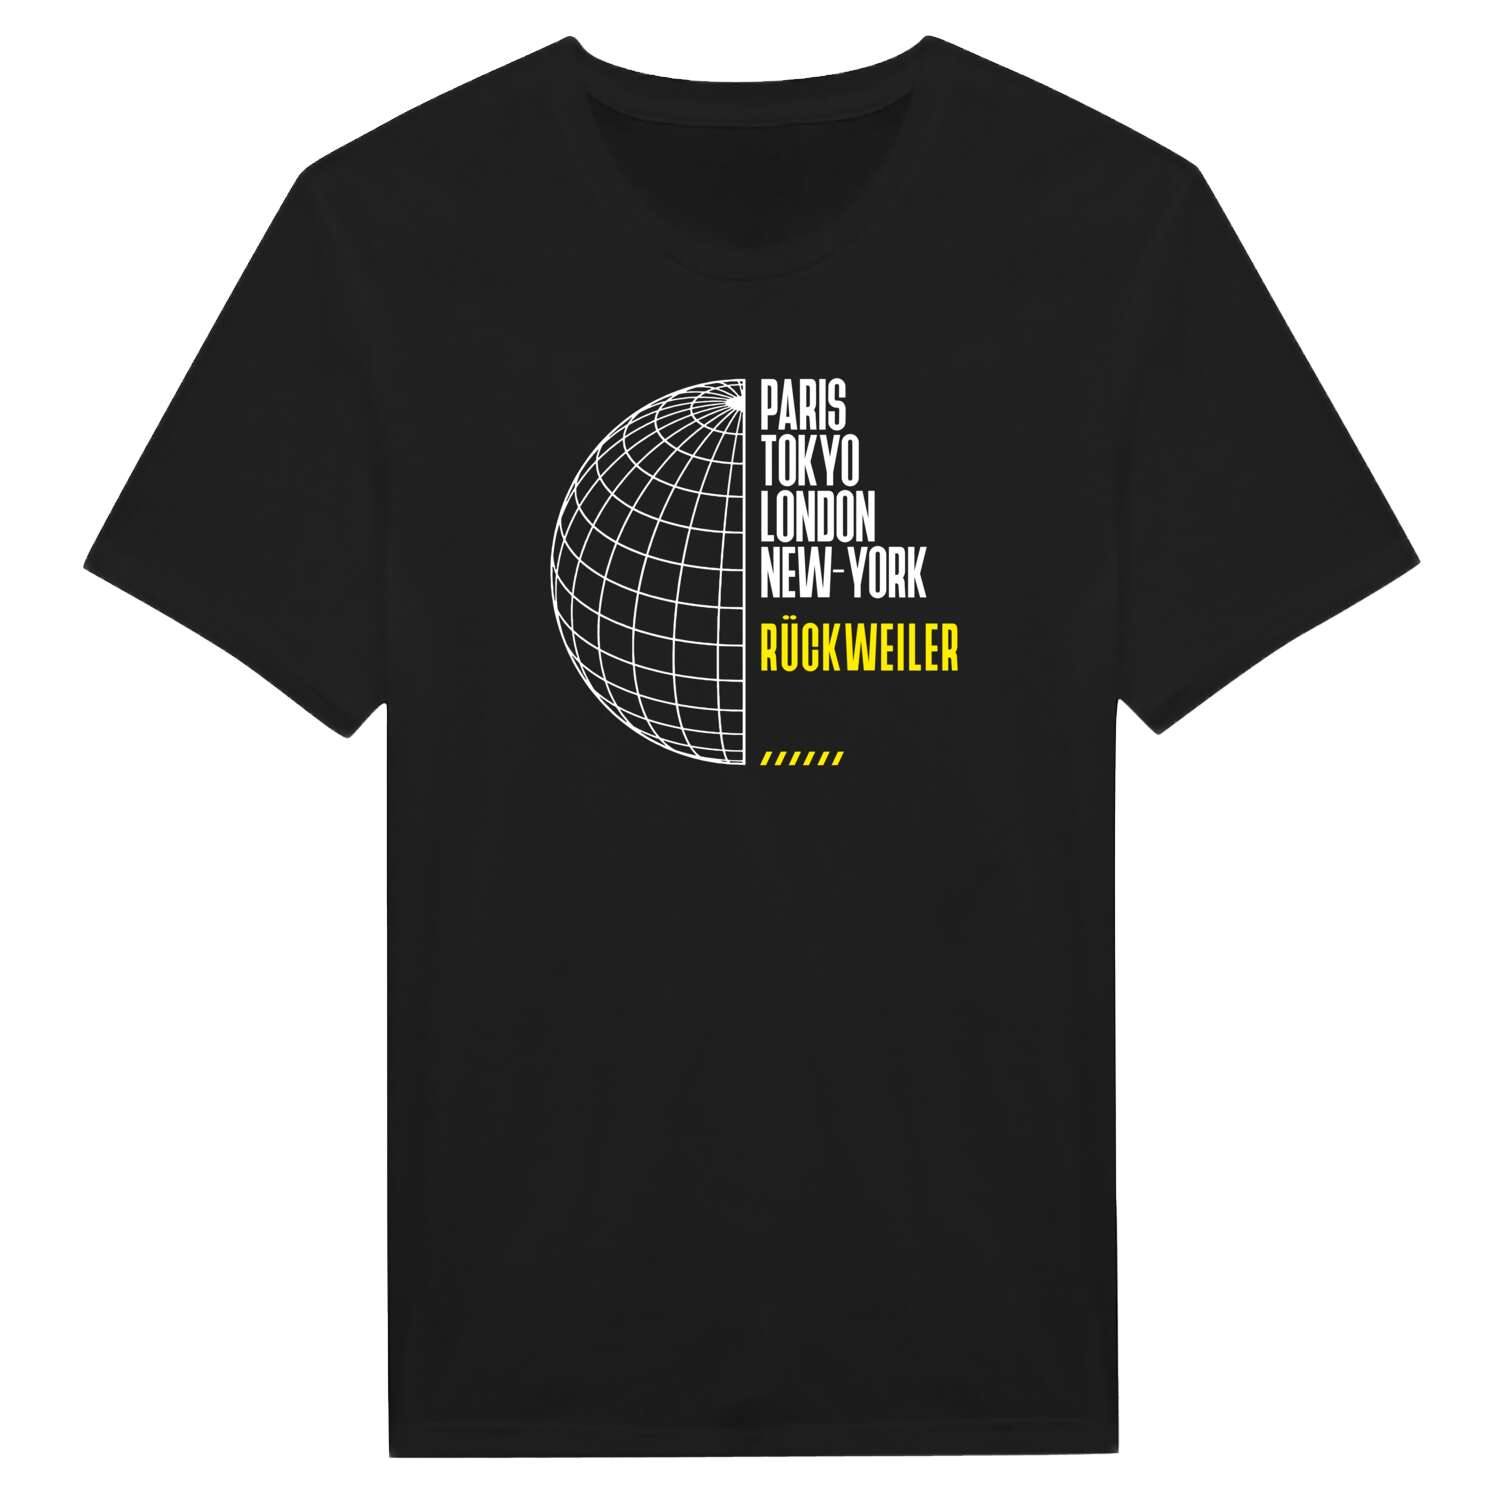 Rückweiler T-Shirt »Paris Tokyo London«